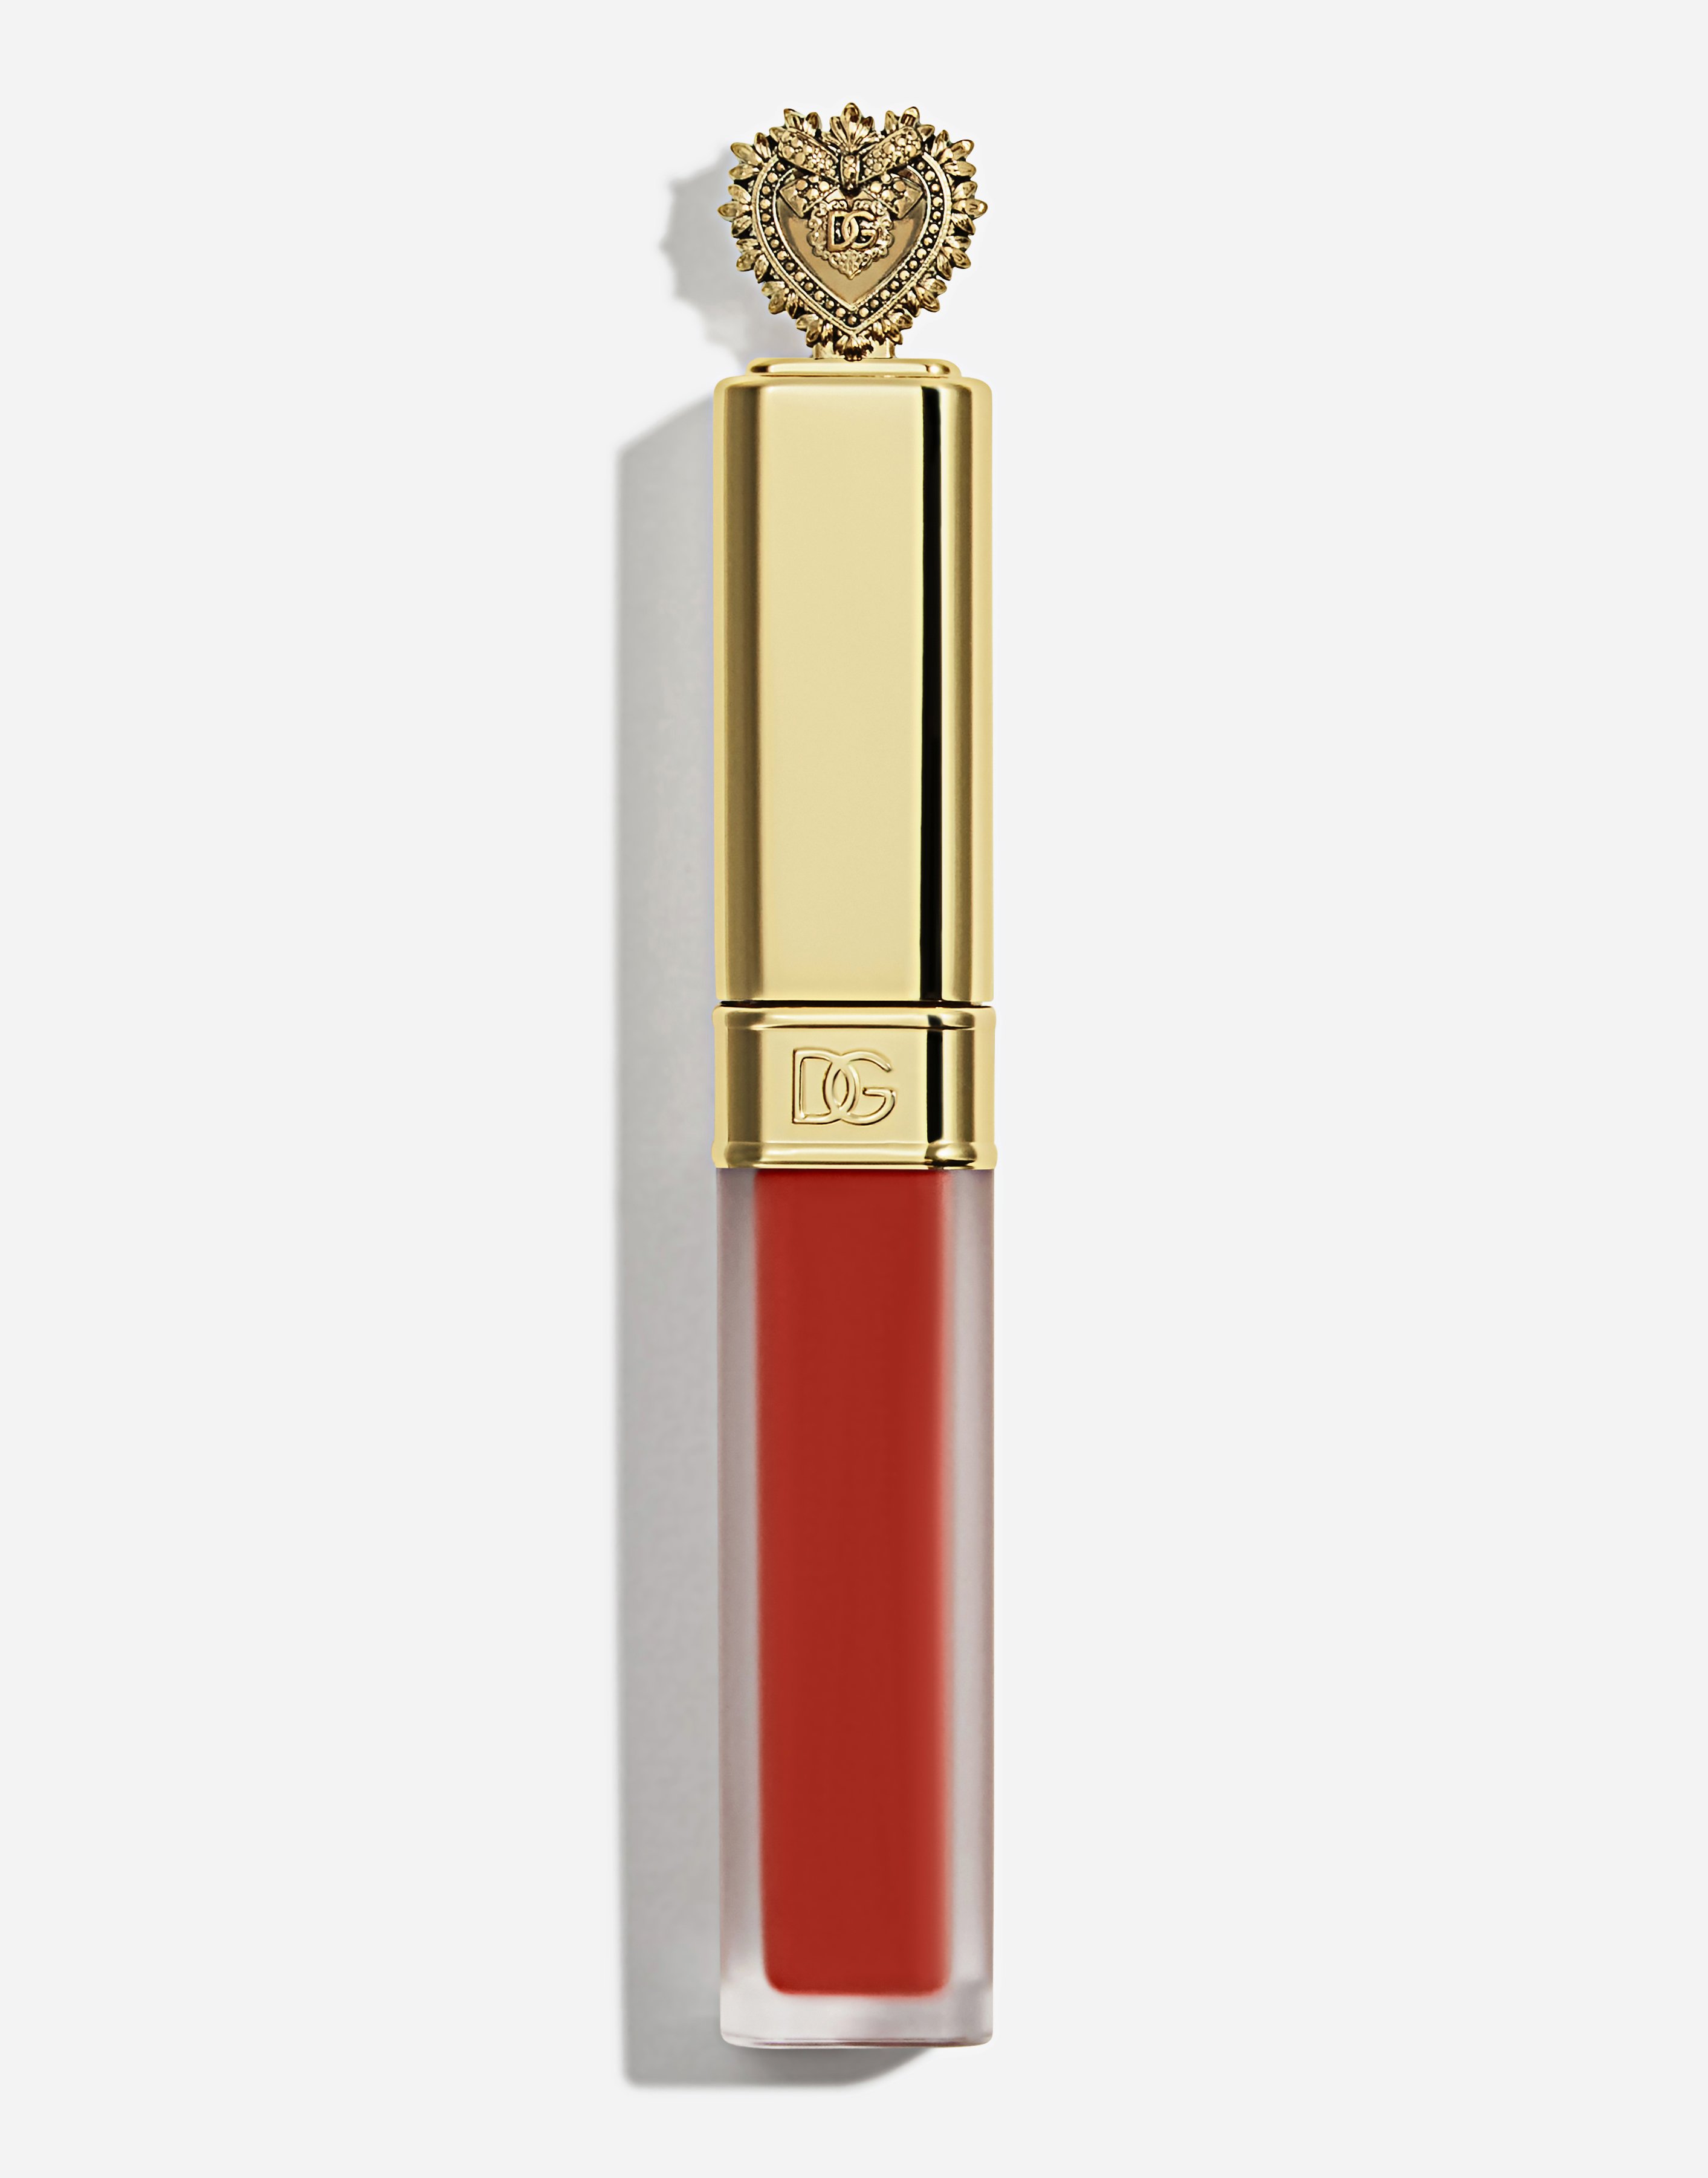 Dolce & Gabbana Devotion Liquid Lipstick In Mousse In 400 Orgoglio